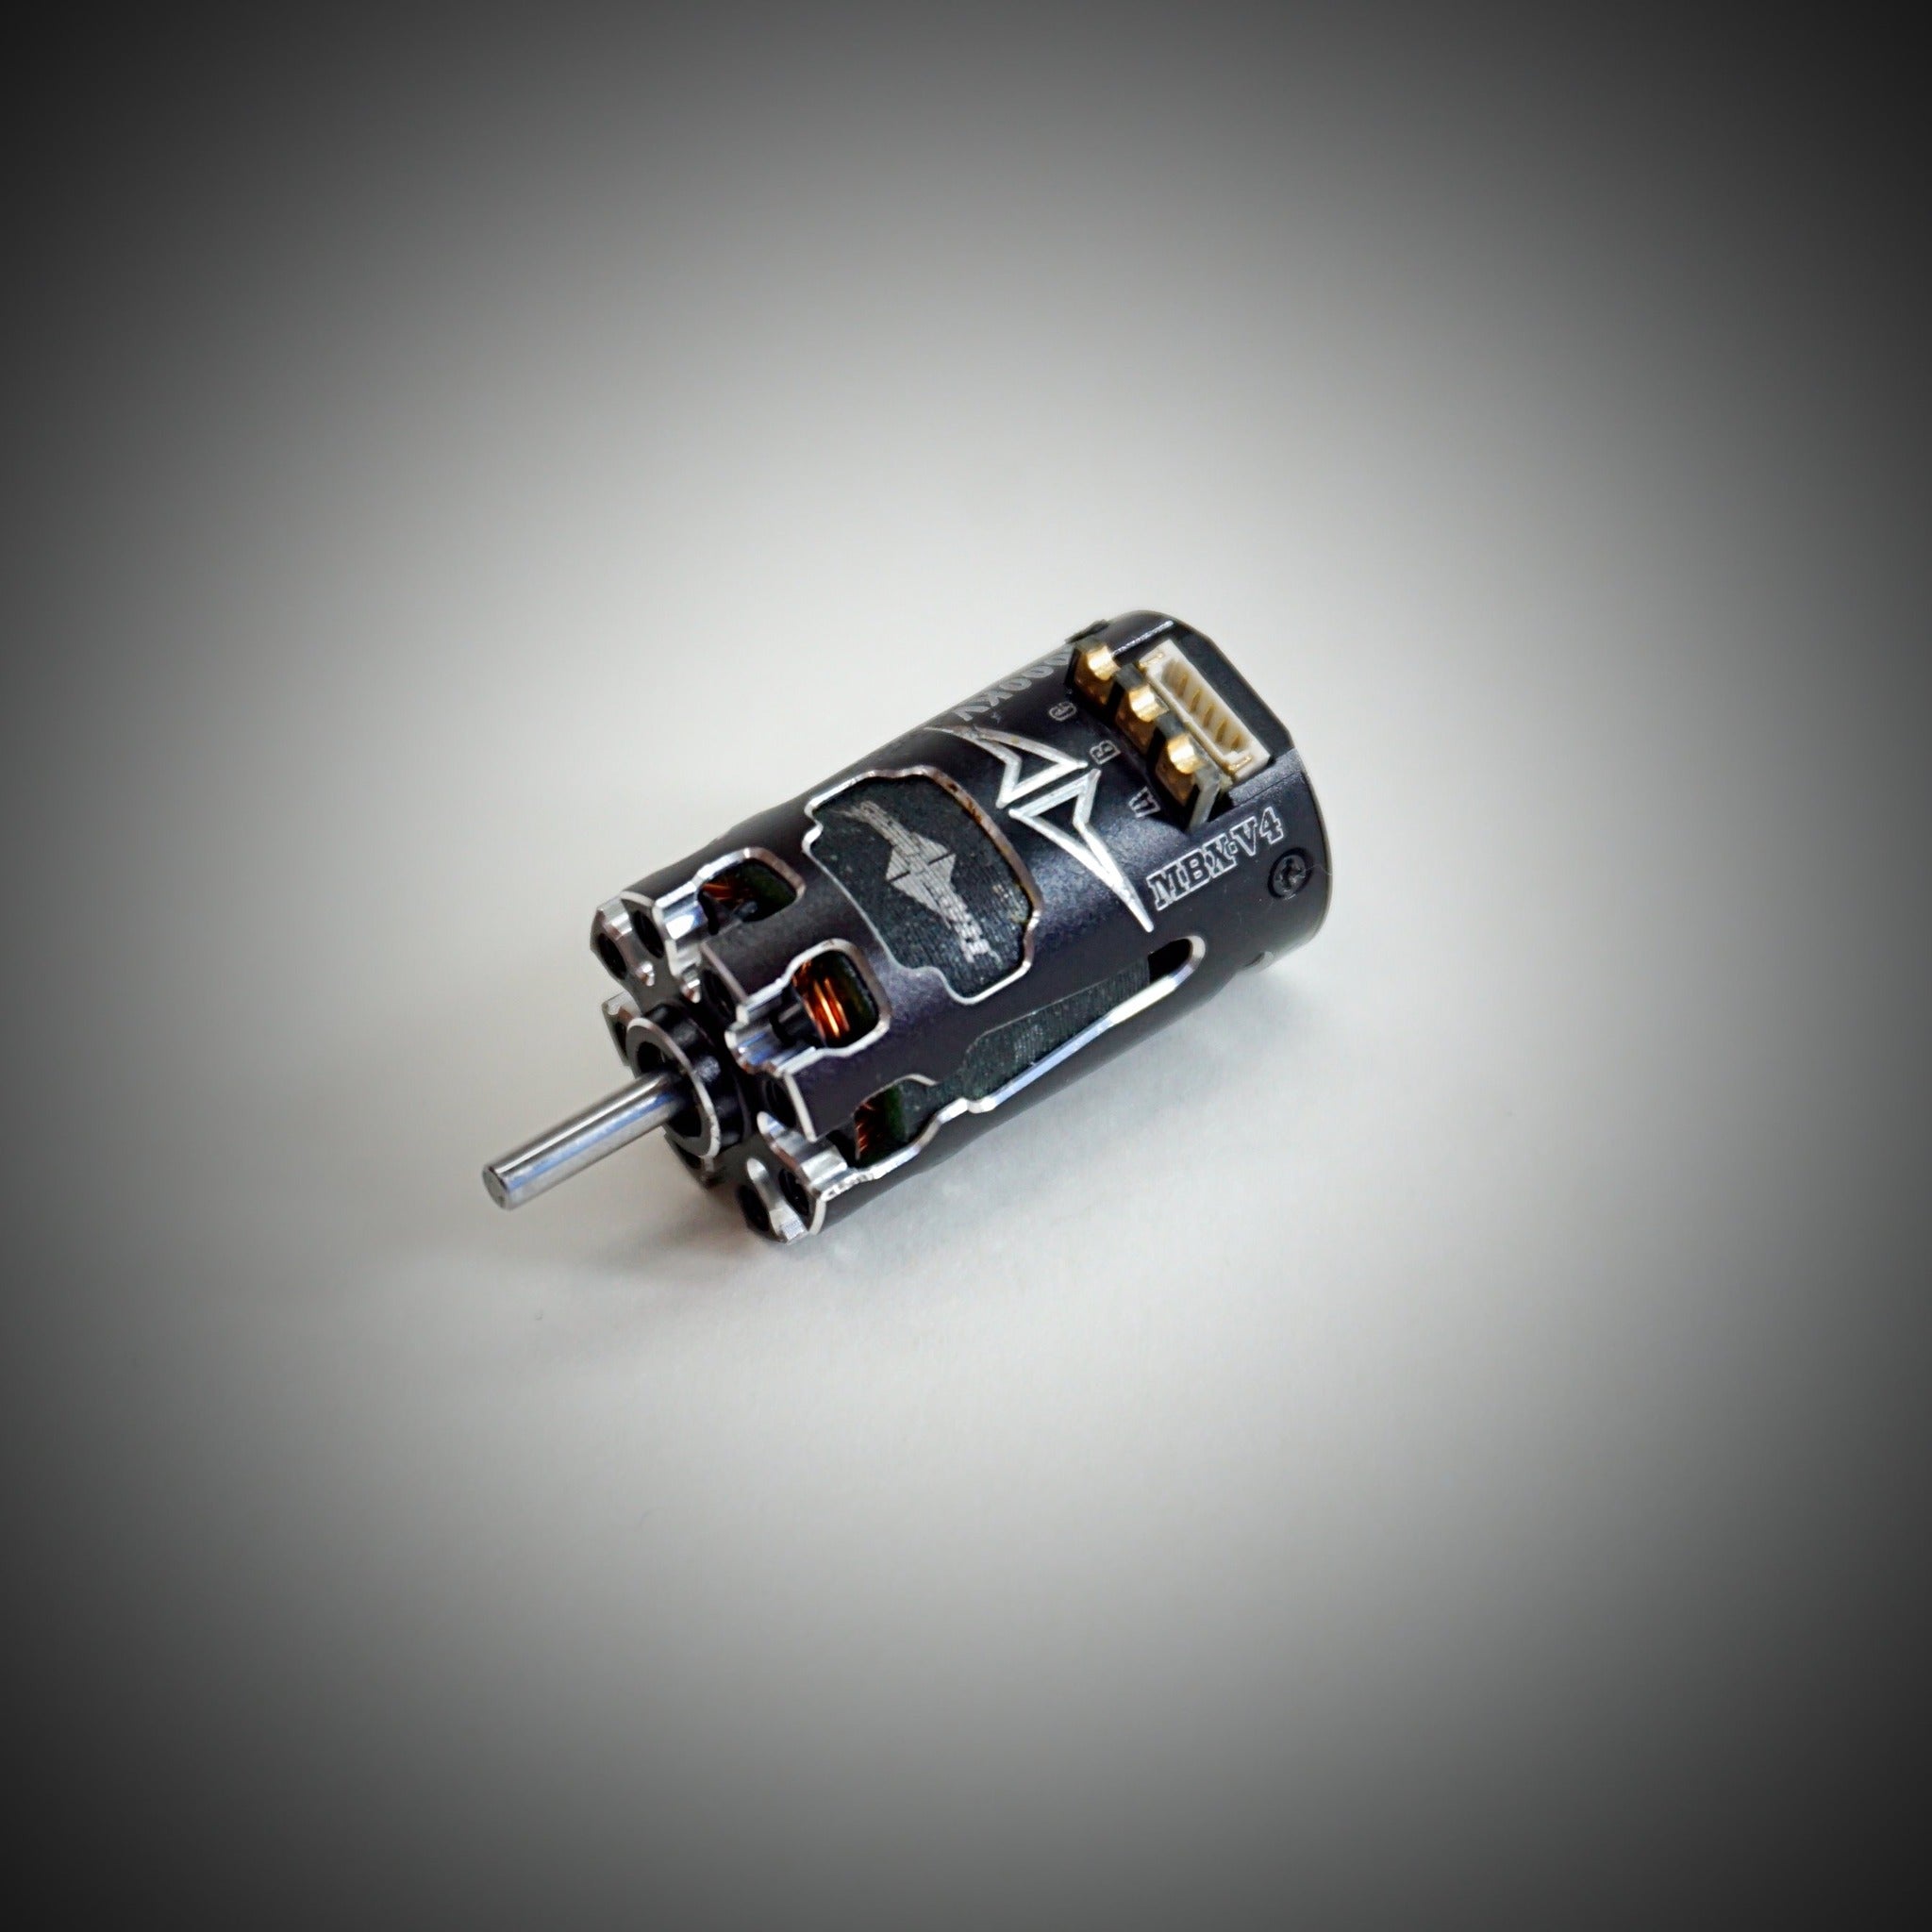 Team Powers - MBX V4 Mini-Z Sensored Brushless Motor